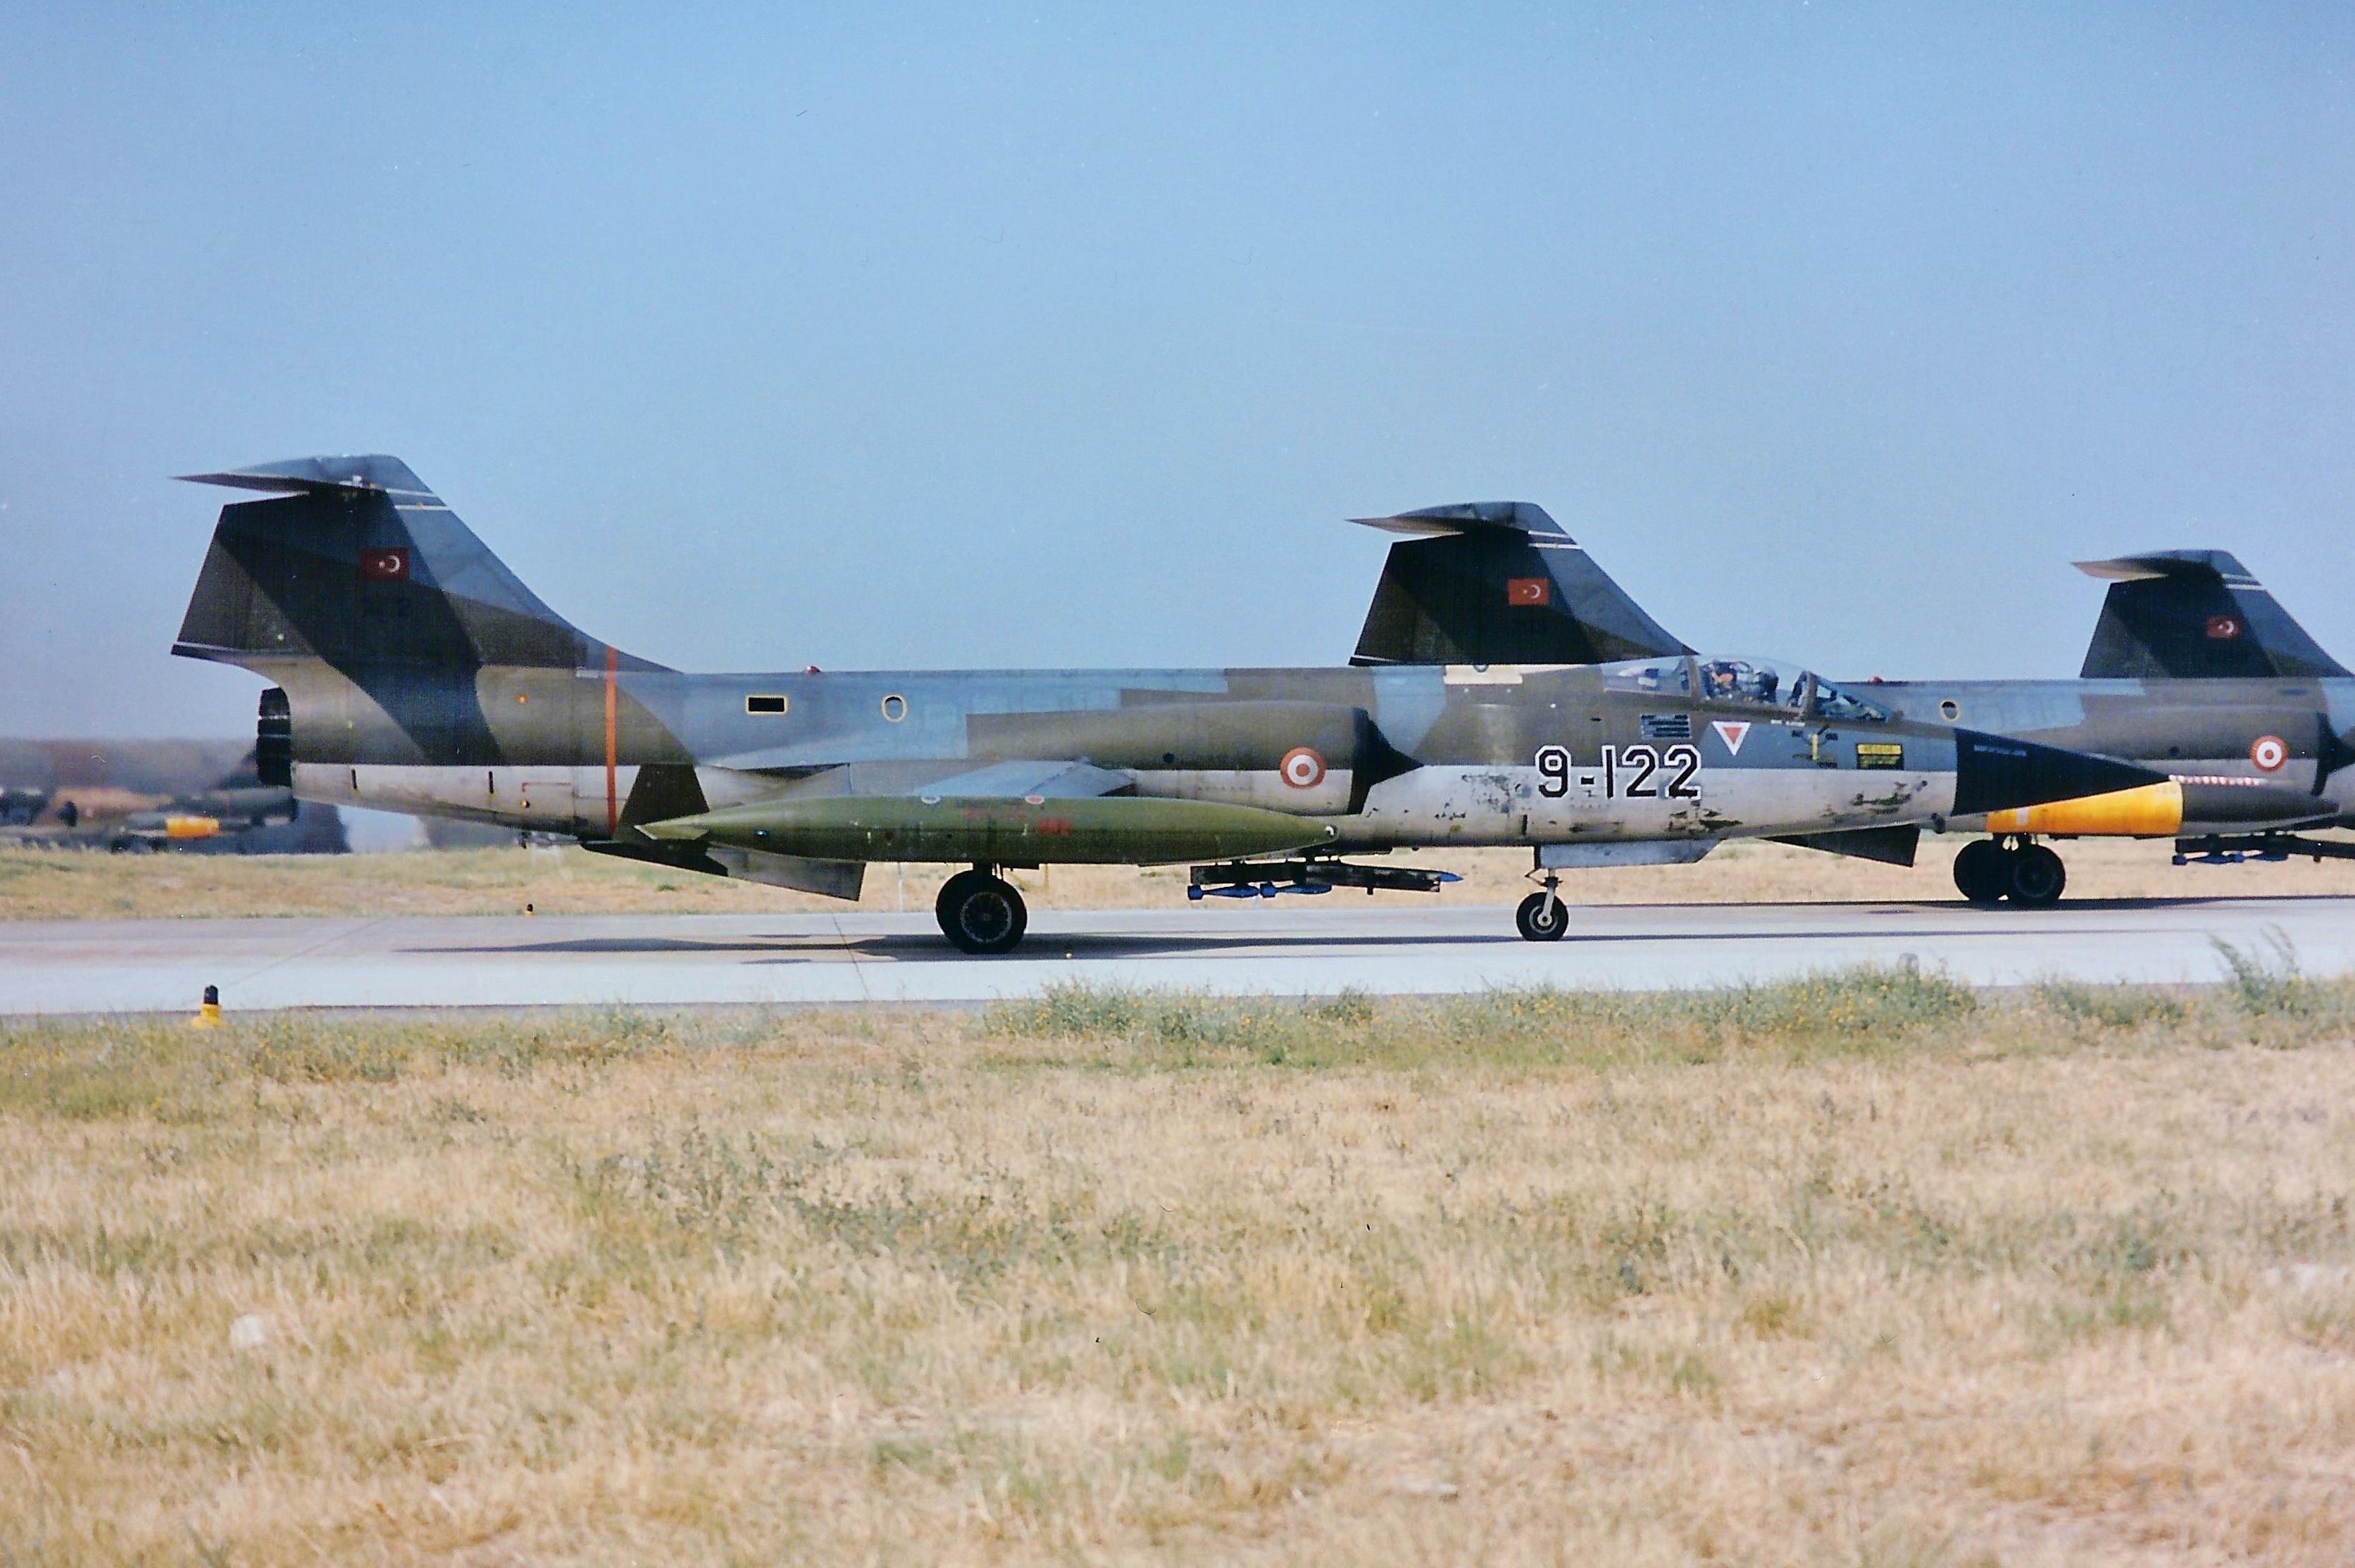 F-104G 7122